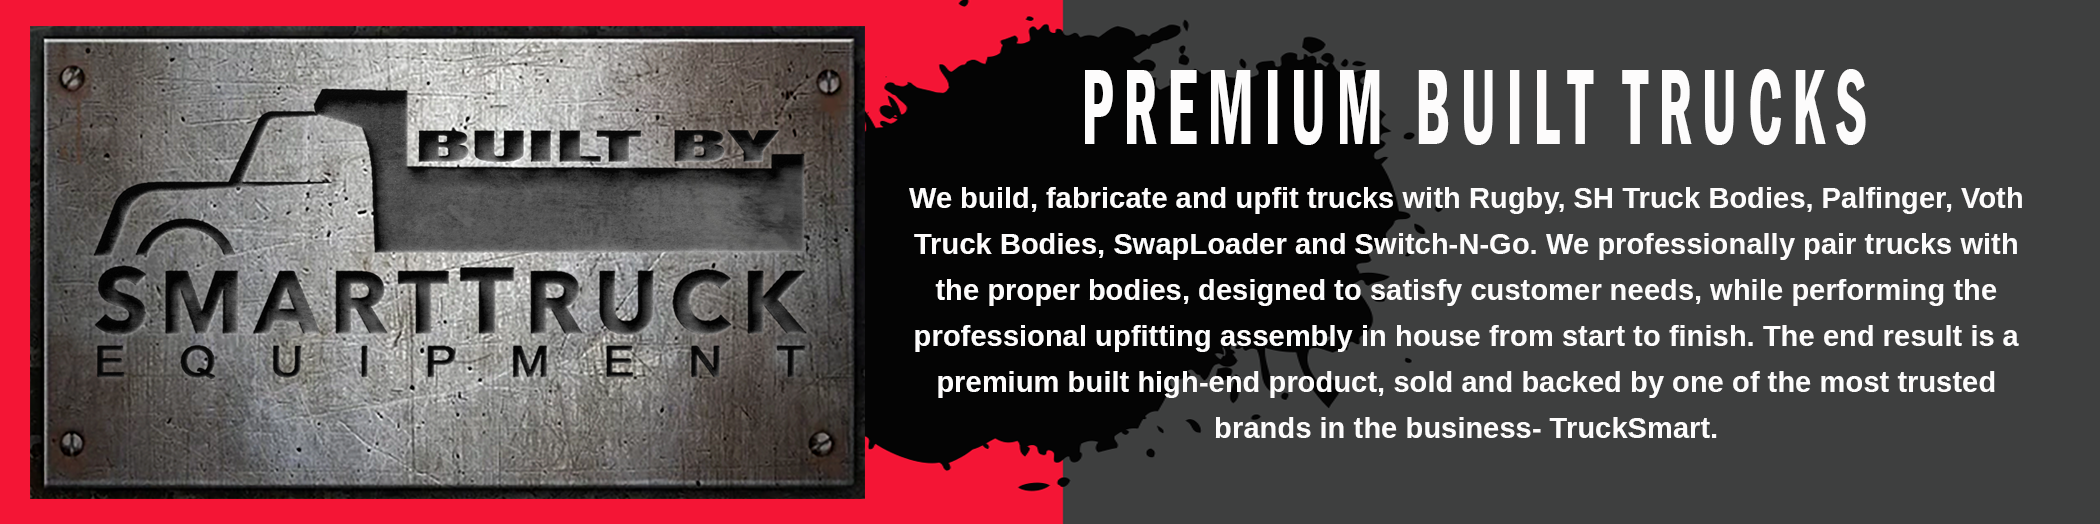 Premium Built Trucks